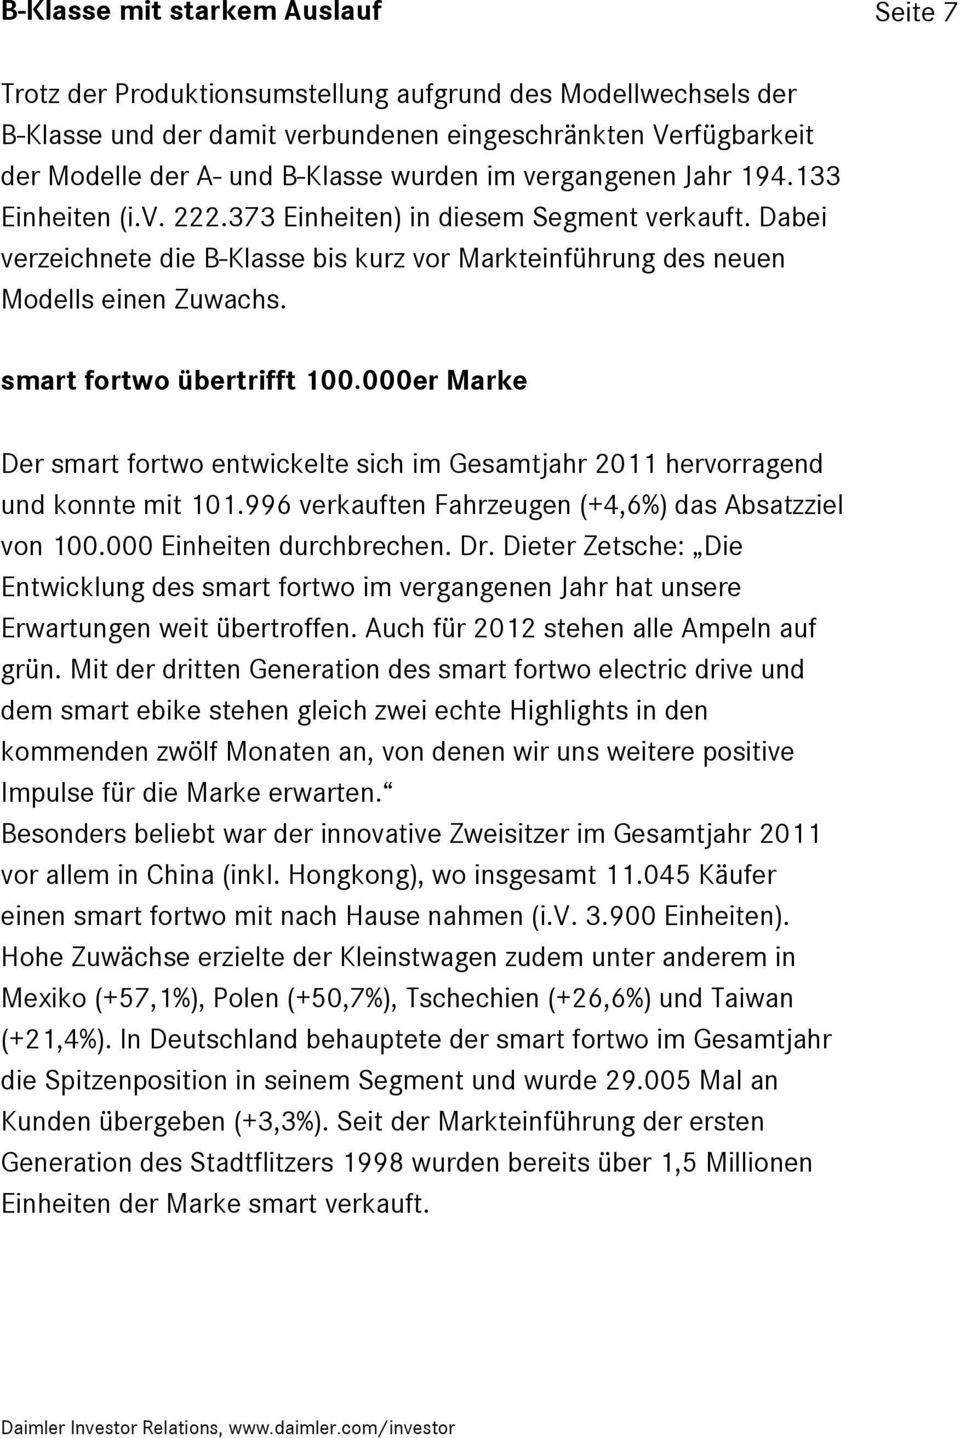 smart fortwo übertrifft 100.000er Marke Der smart fortwo entwickelte sich im Gesamtjahr 2011 hervorragend und konnte mit 101.996 verkauften Fahrzeugen (+4,6%) das Absatzziel von 100.